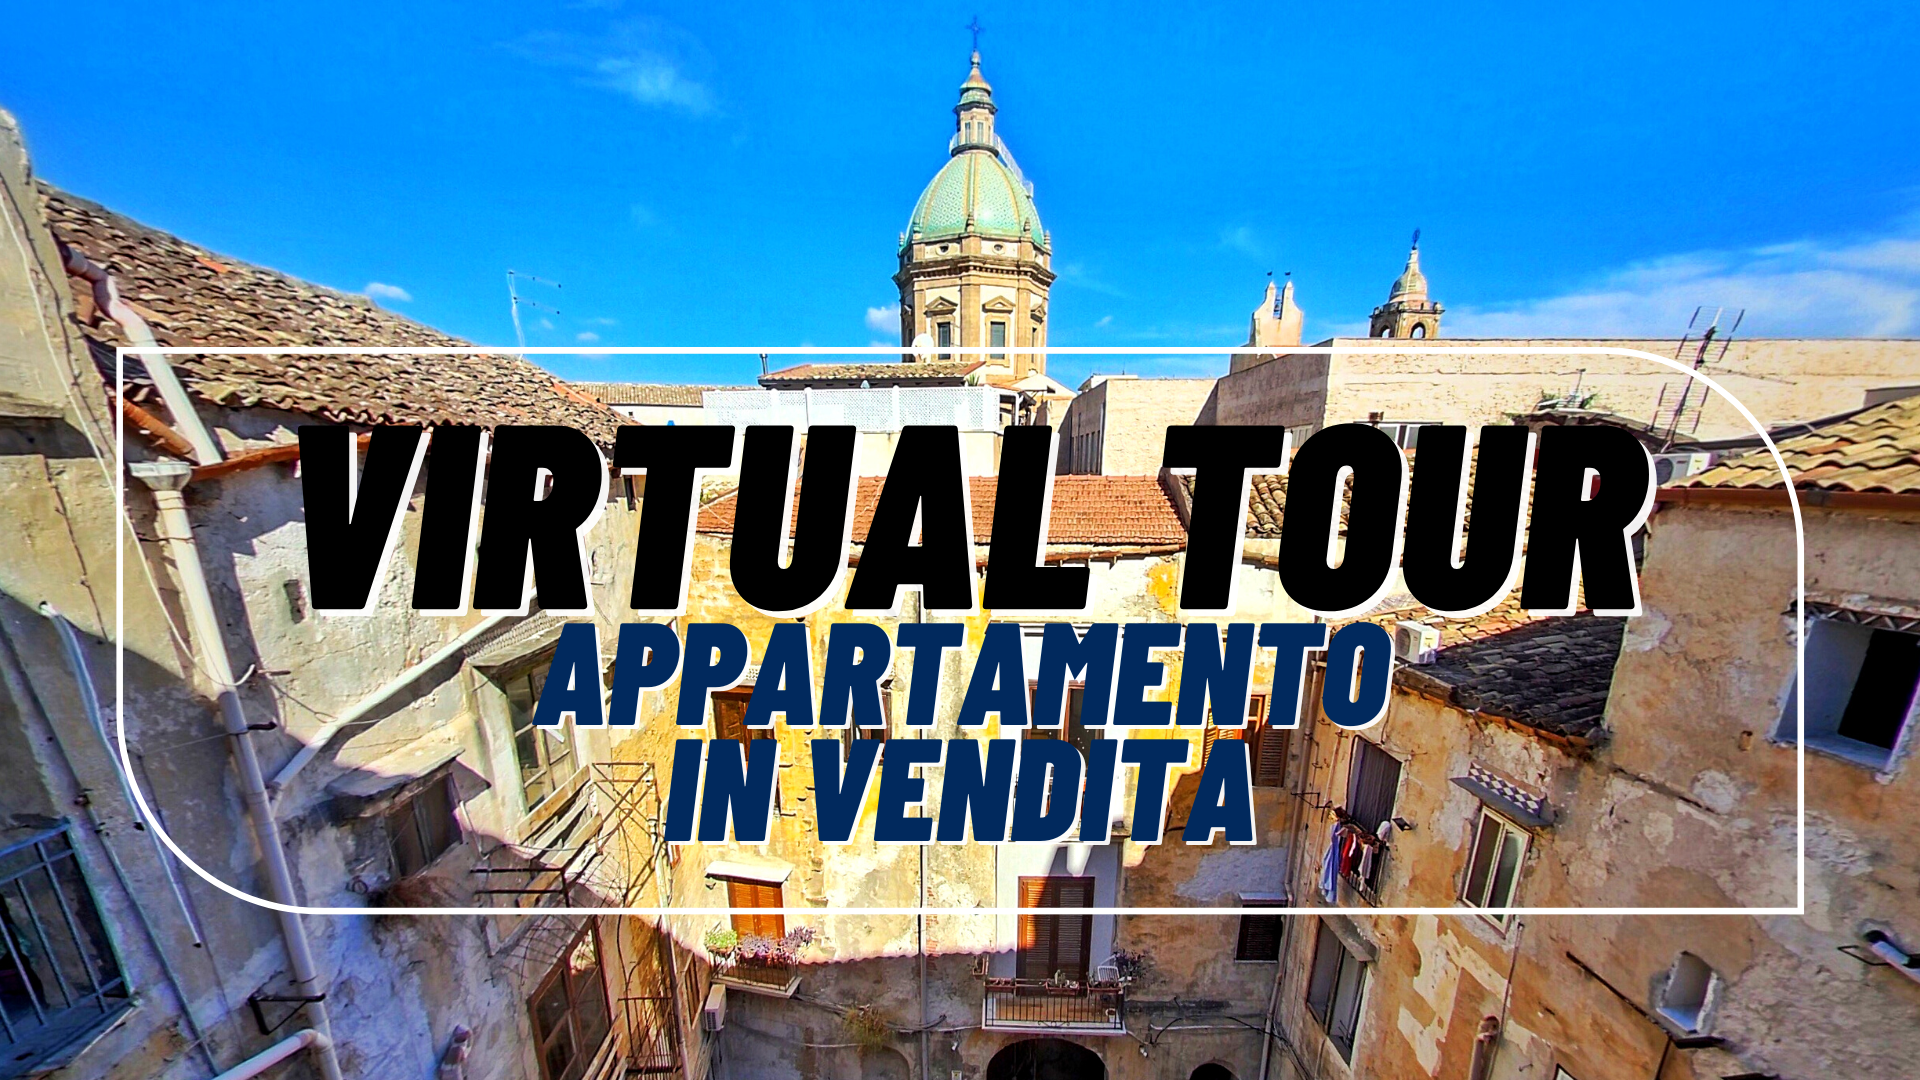 Tour Virtuale appartamento in vendita a palermo